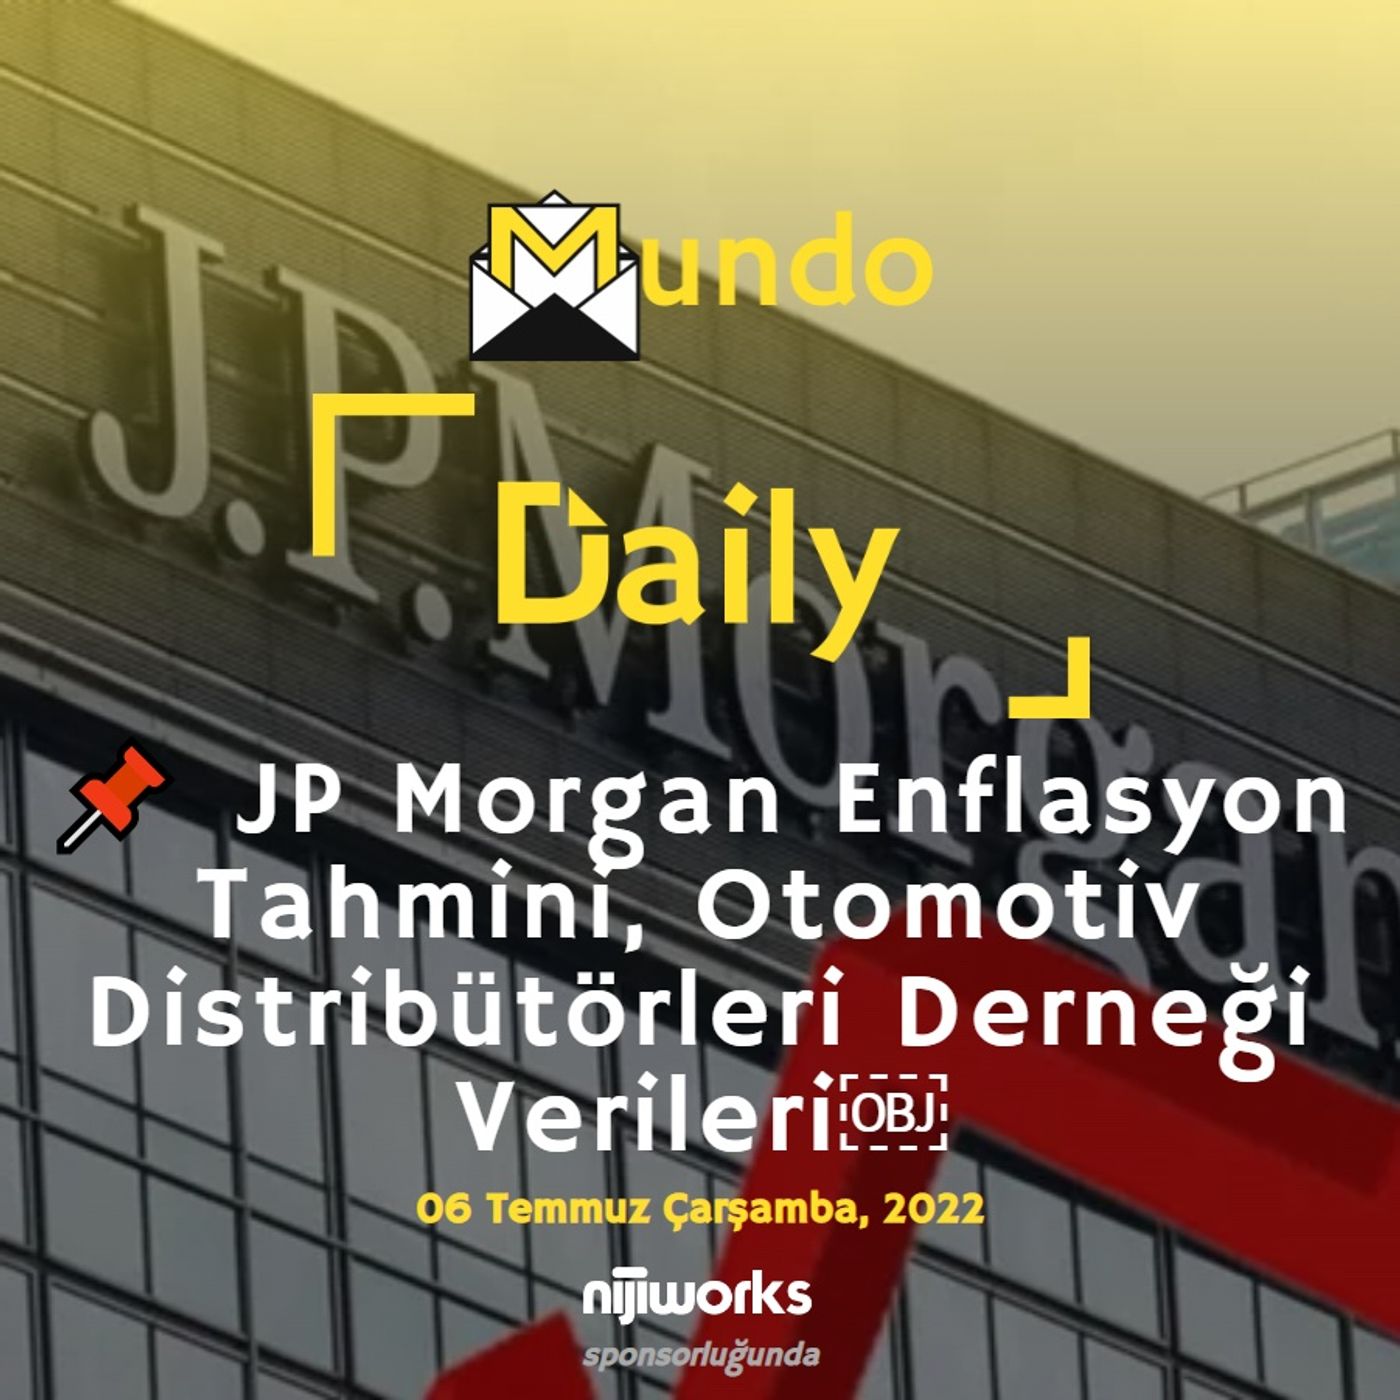 📌 JP Morgan Enflasyon Tahmini, Otomotiv Distribütörleri Derneği Verileri